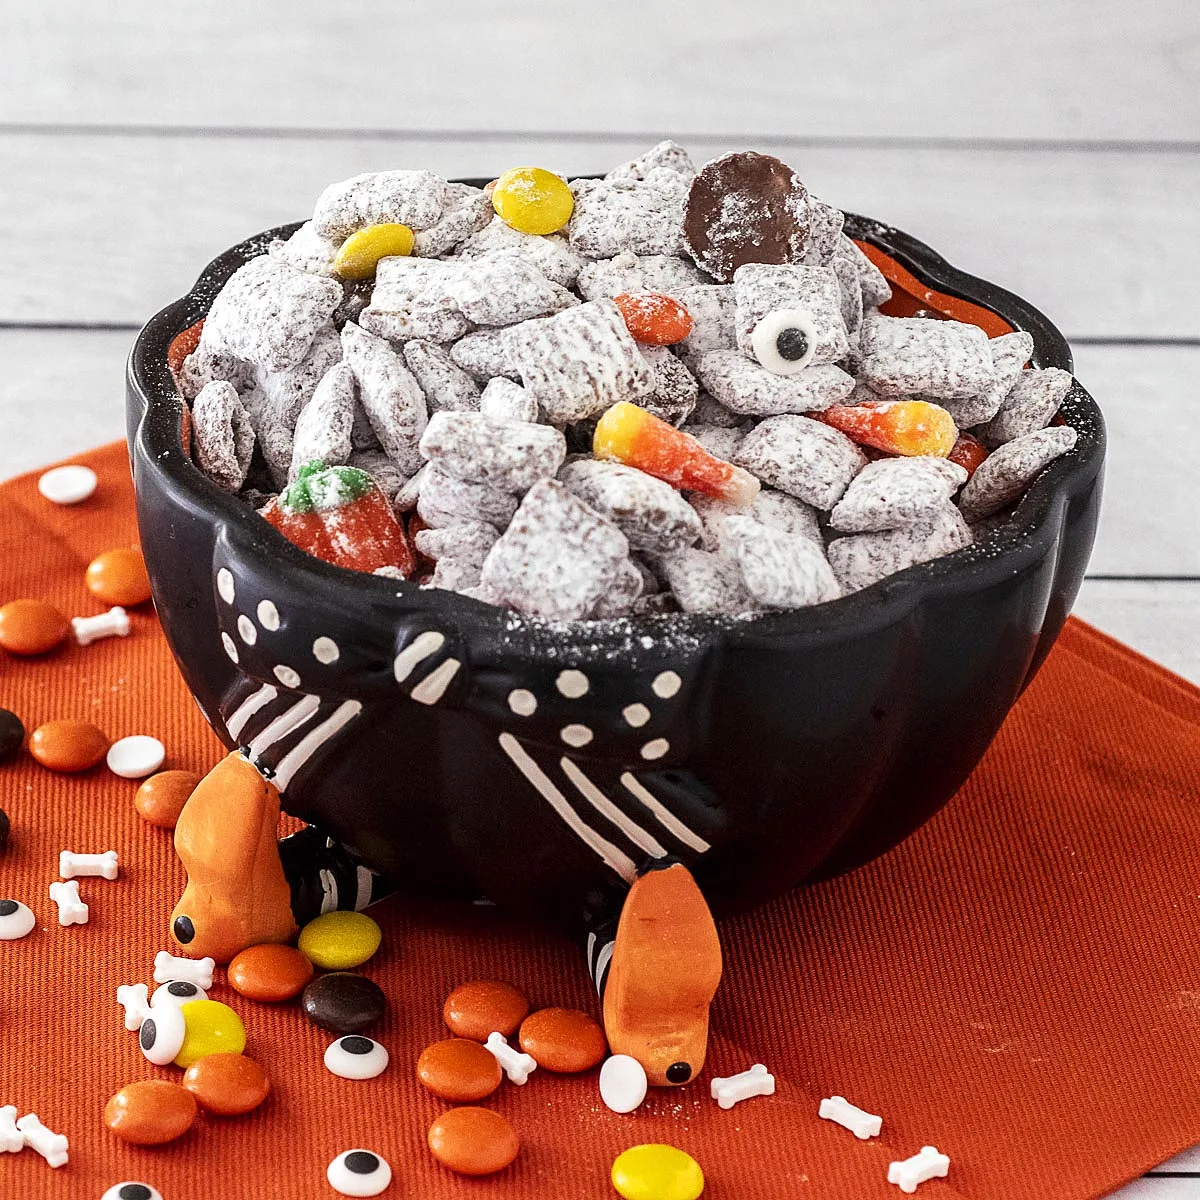 Halloween Muddy Buddies in a cauldron candy dish.